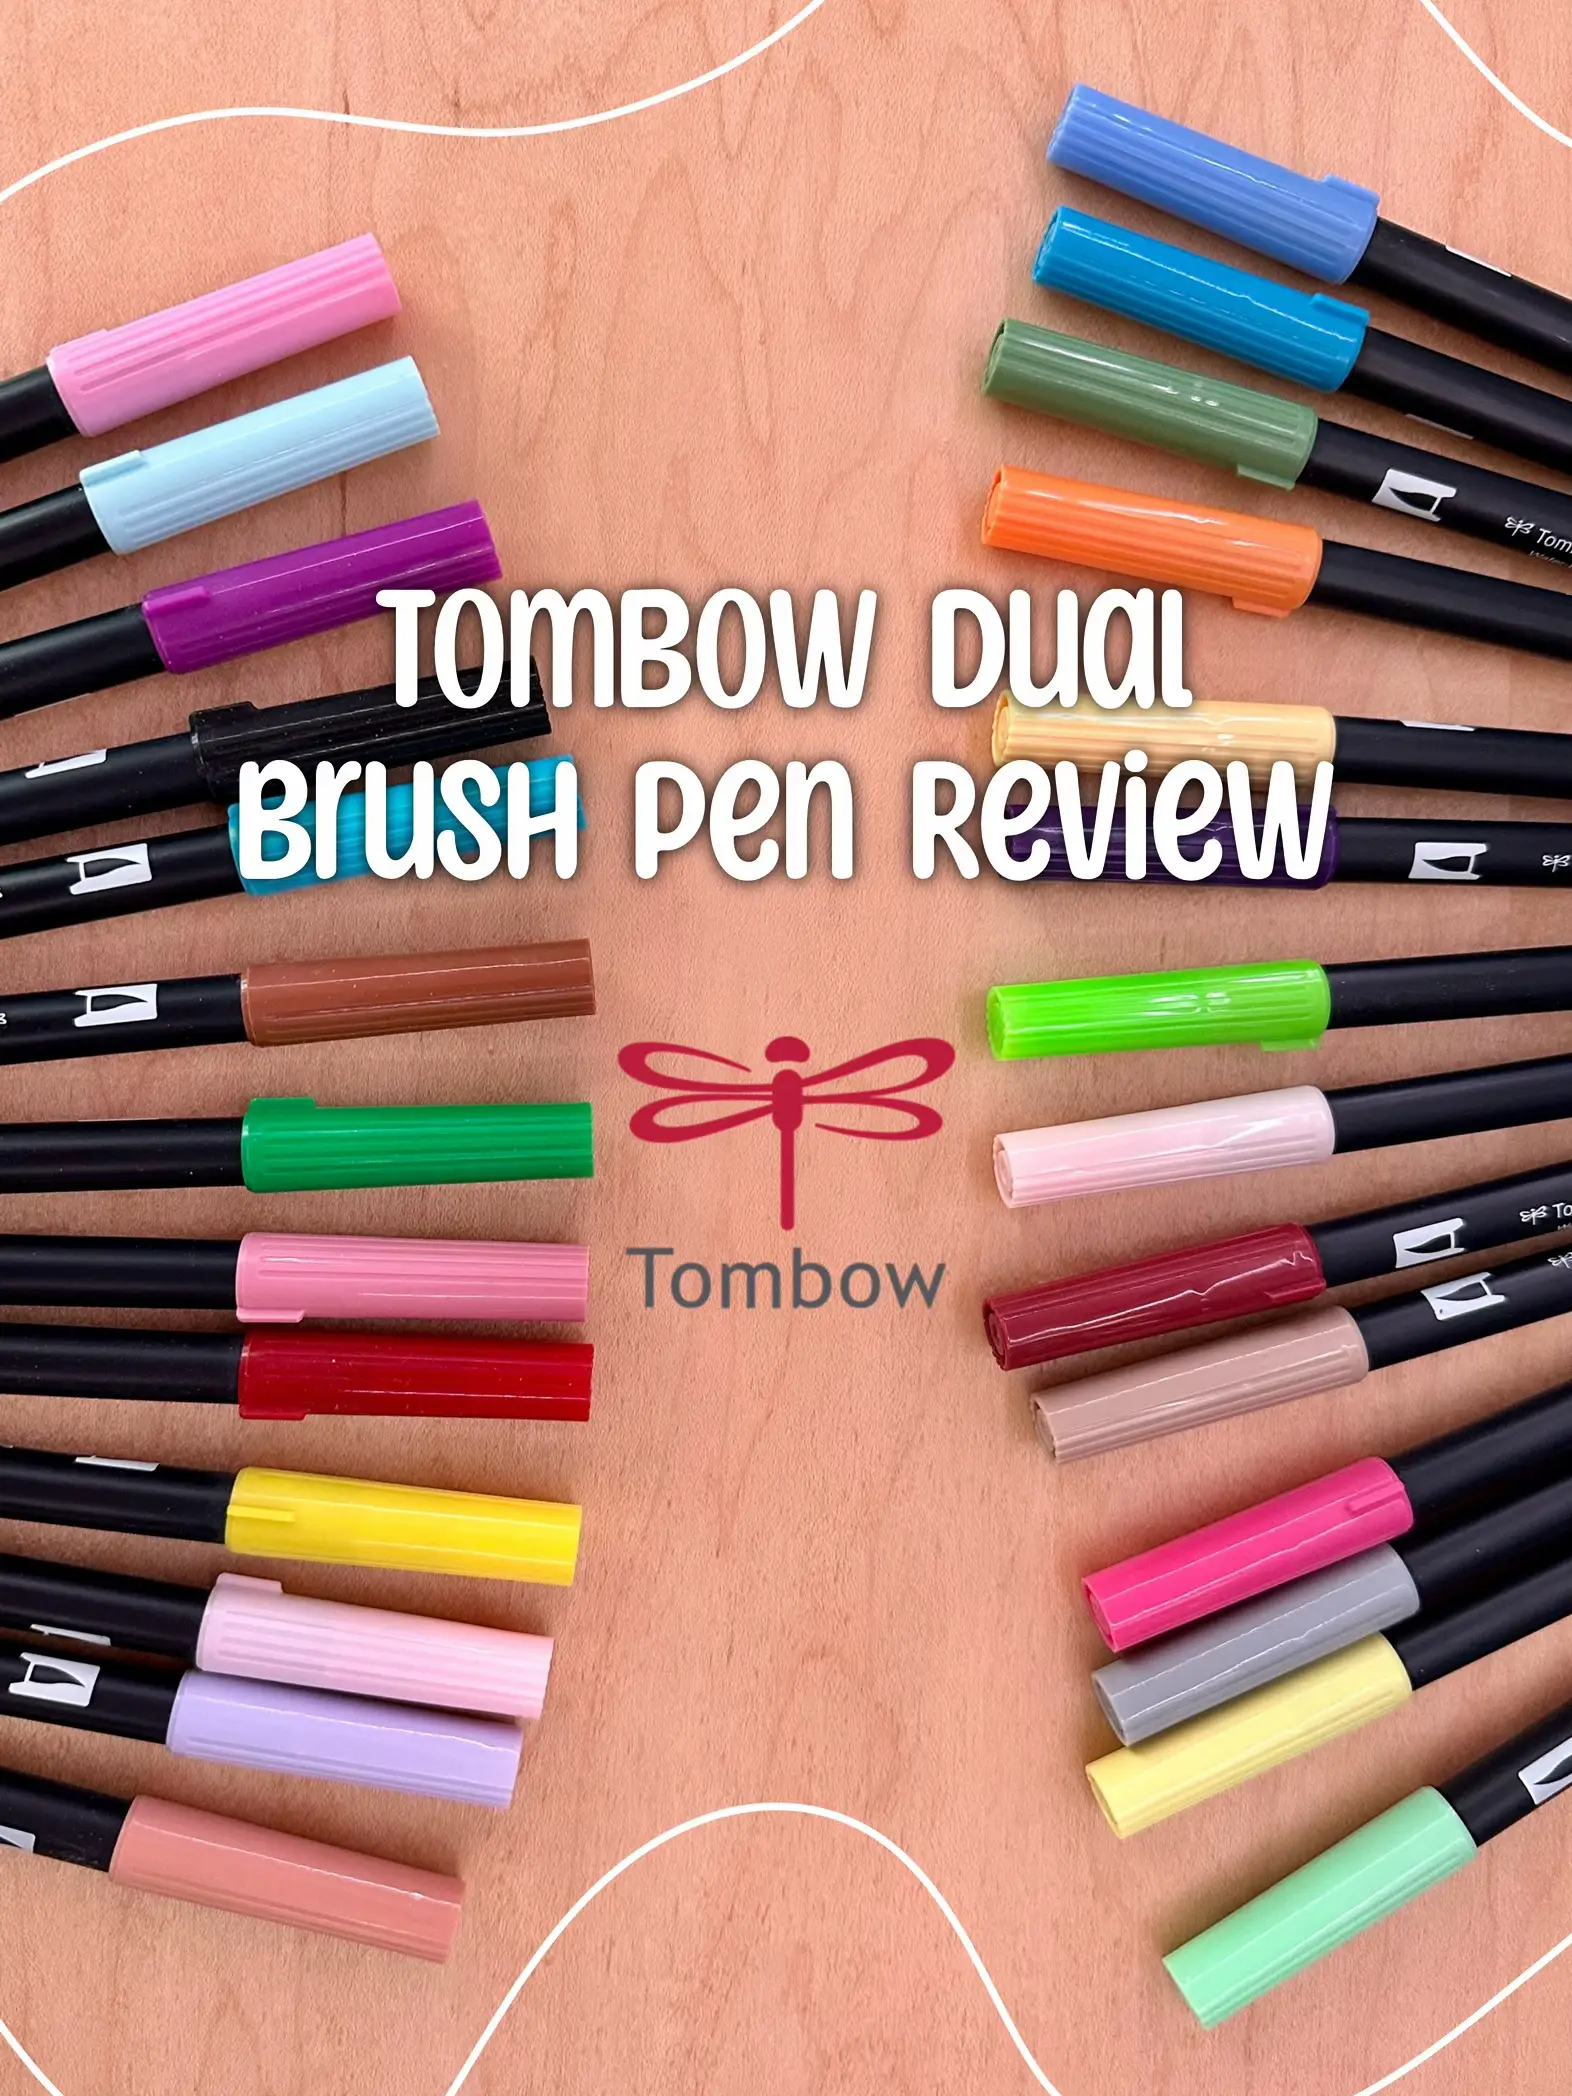 Zebra Pen Mildliner Brush Marker, Double Ended Brush and Fine Tip Pen,  Assorted Soft Colors, 10 Pack - Yahoo Shopping